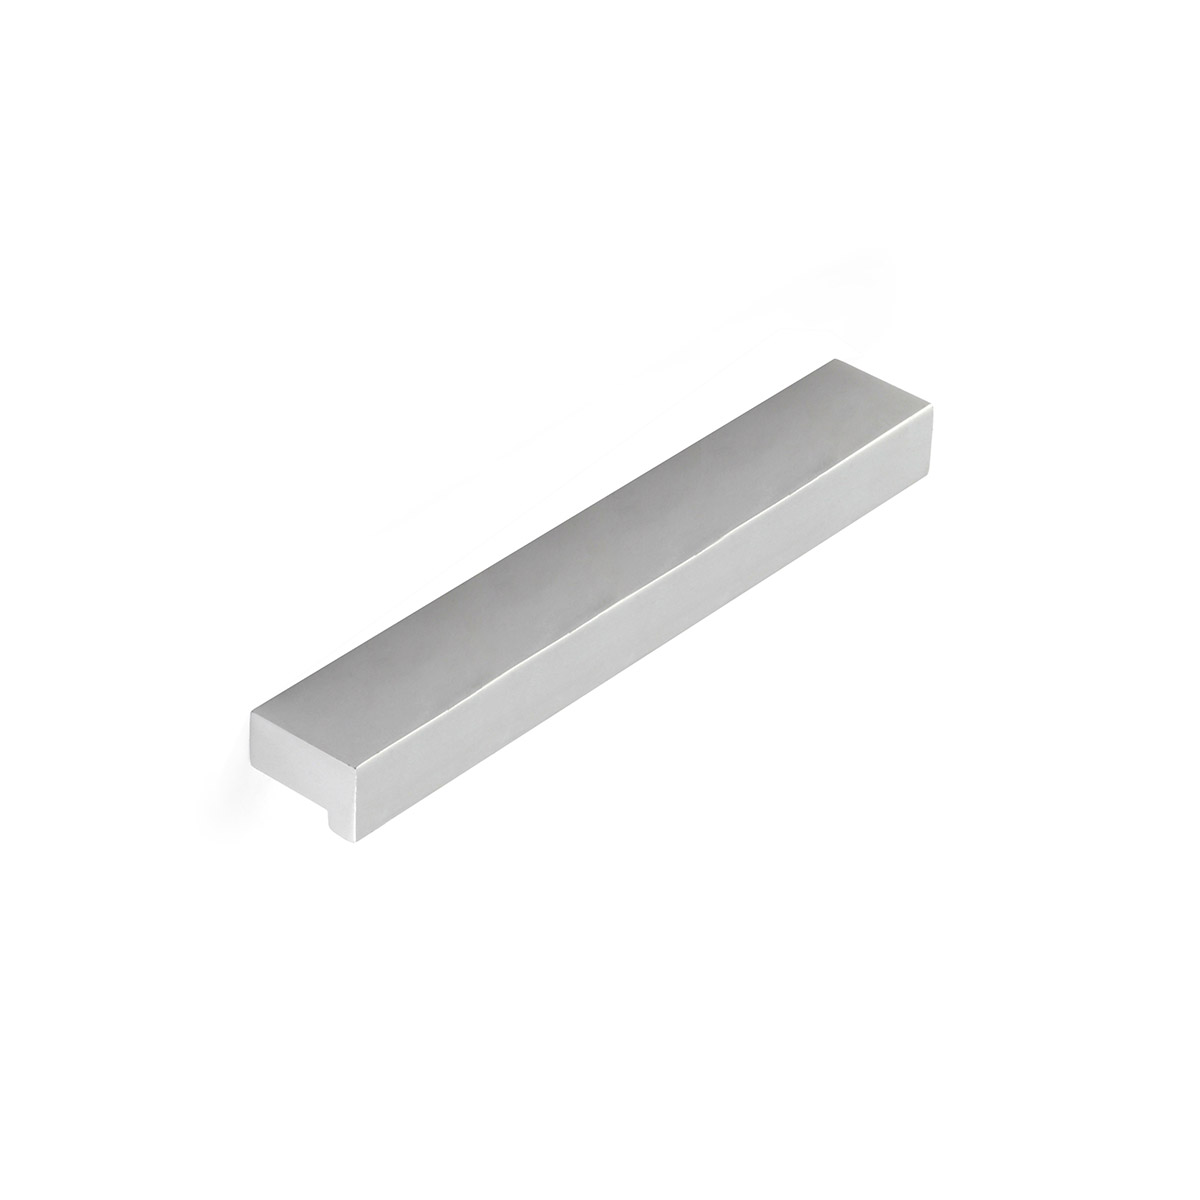 Blister avec 4 anses en aluminium, finition anodisée mate, dimensions: 250x12x18mm et inserts: 160mm